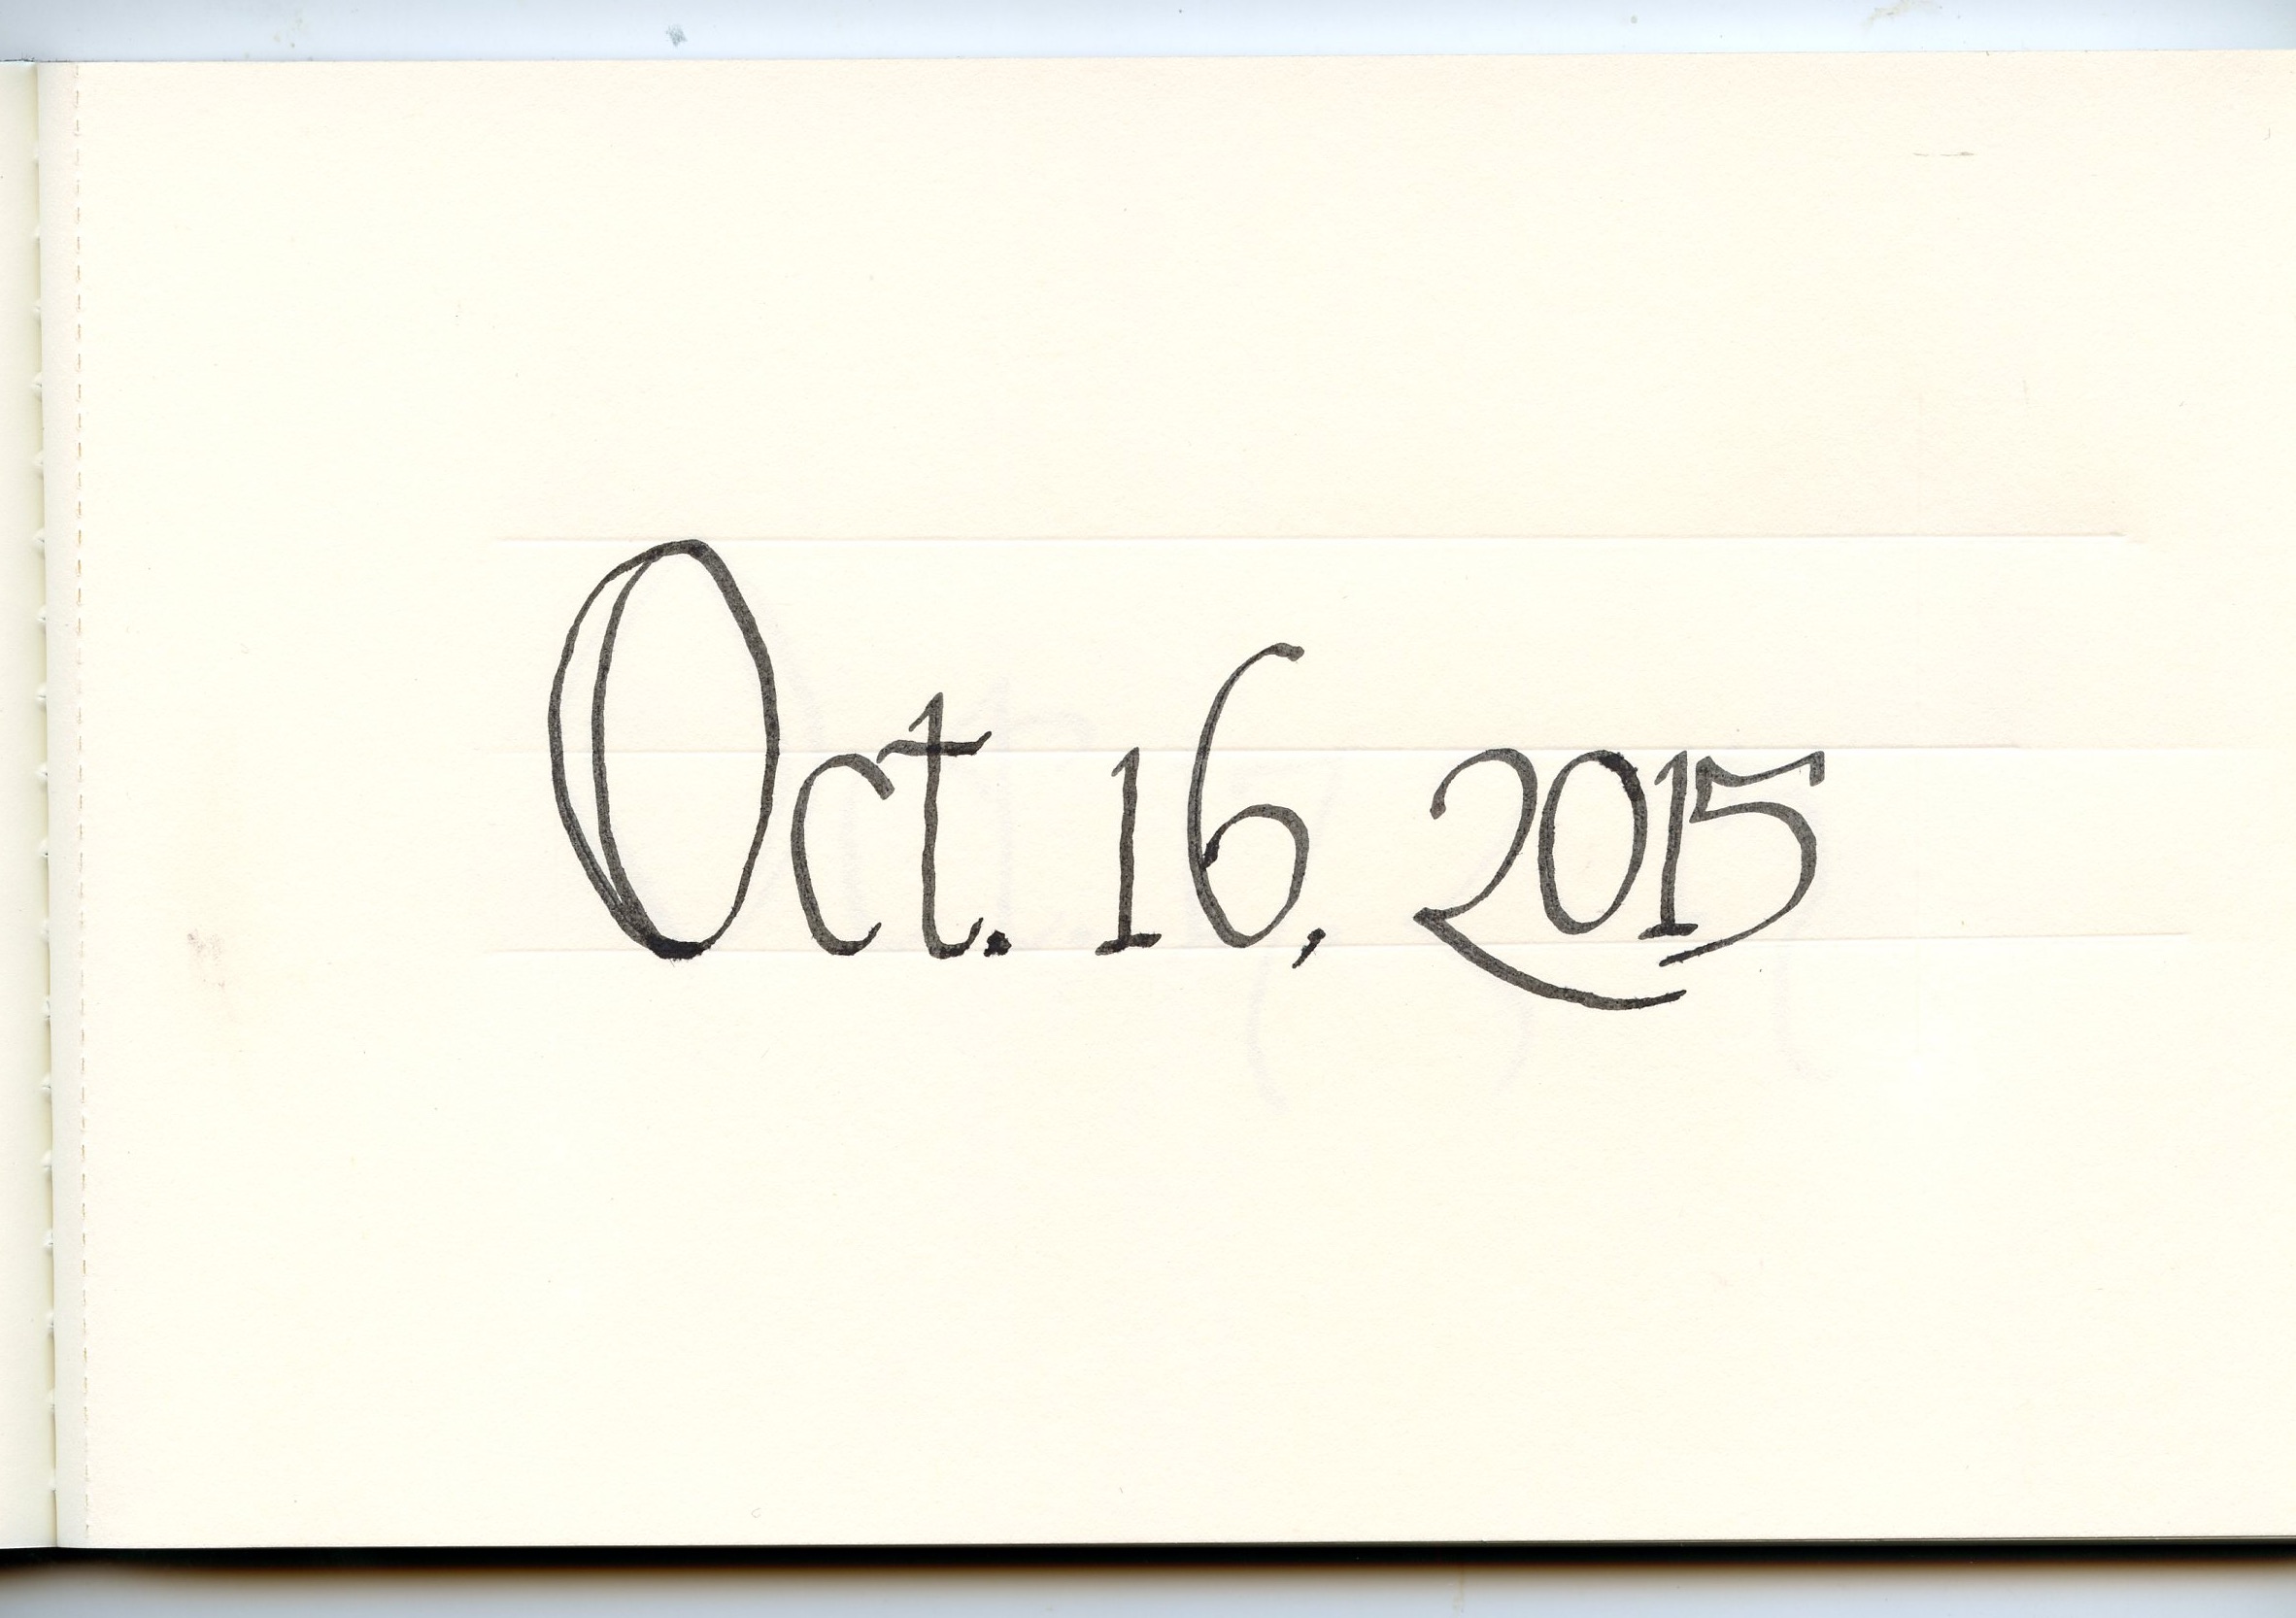 Oct 16, 2015